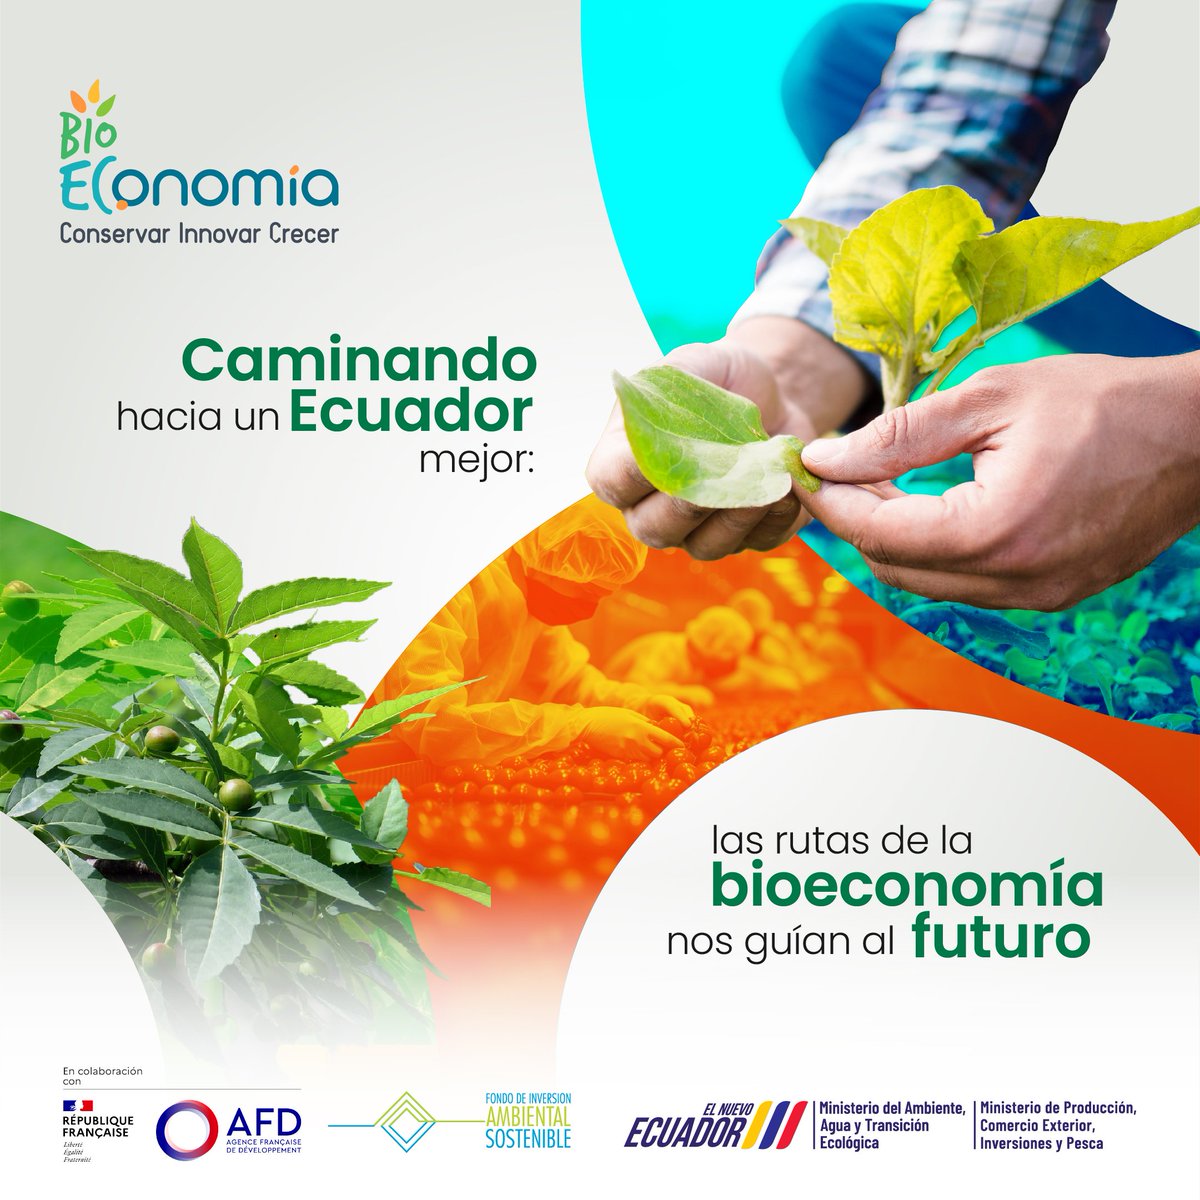 🌿 Con la bioeconomía, cada acción cuenta: cada producto sostenible, cada empleo creado, cada ecosistema conservado.🍃 #Bioeconomía #EcuadorSostenible #medioambiente #economiacircular #sostenible #energiarenovable